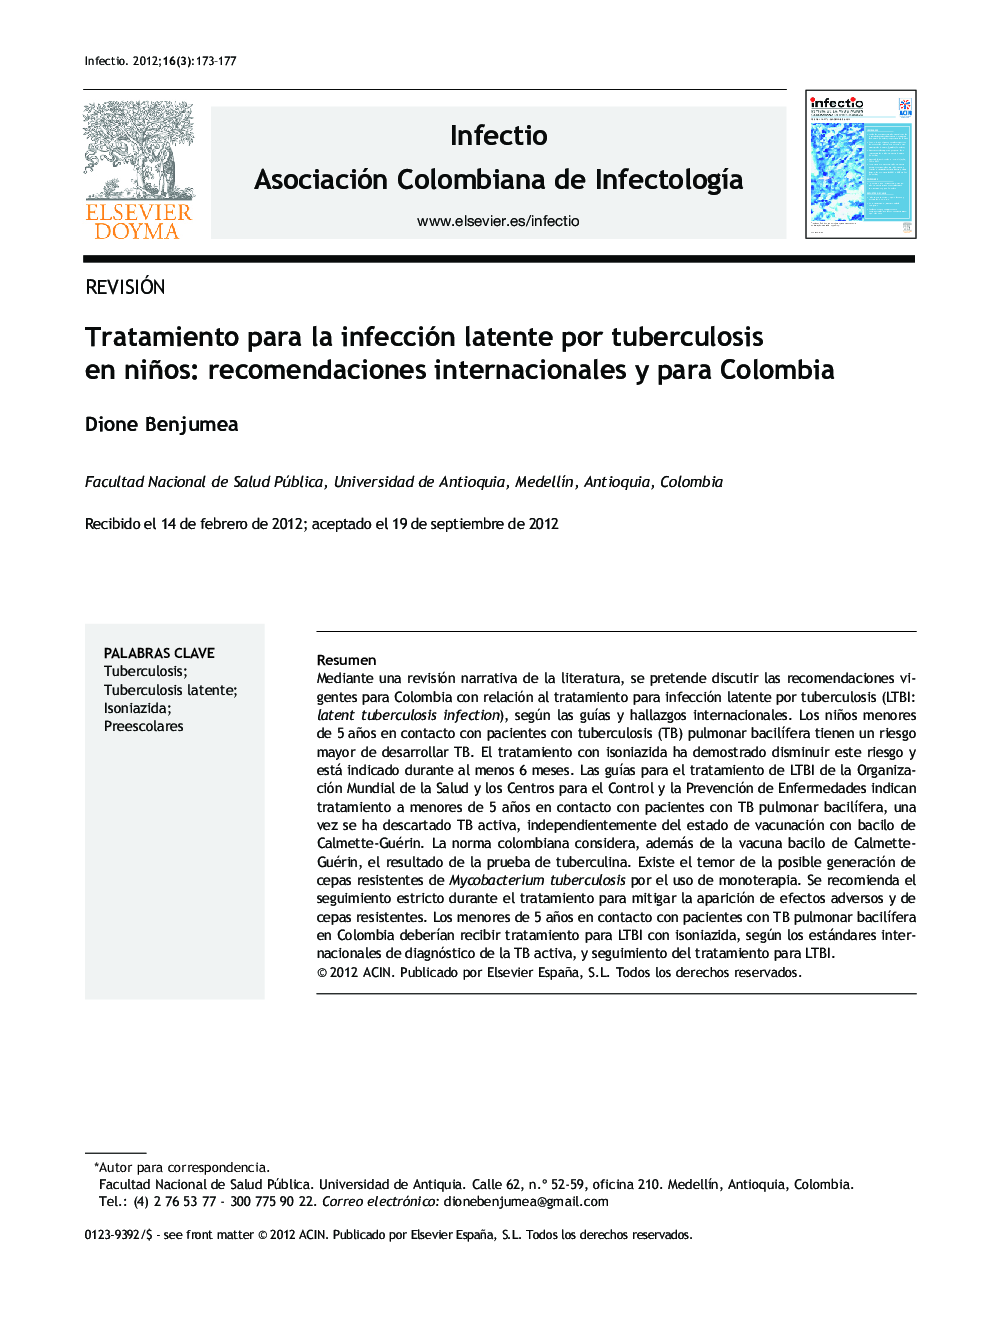 Tratamiento para la infección latente por tuberculosis en niños: recomendaciones internacionales y para Colombia